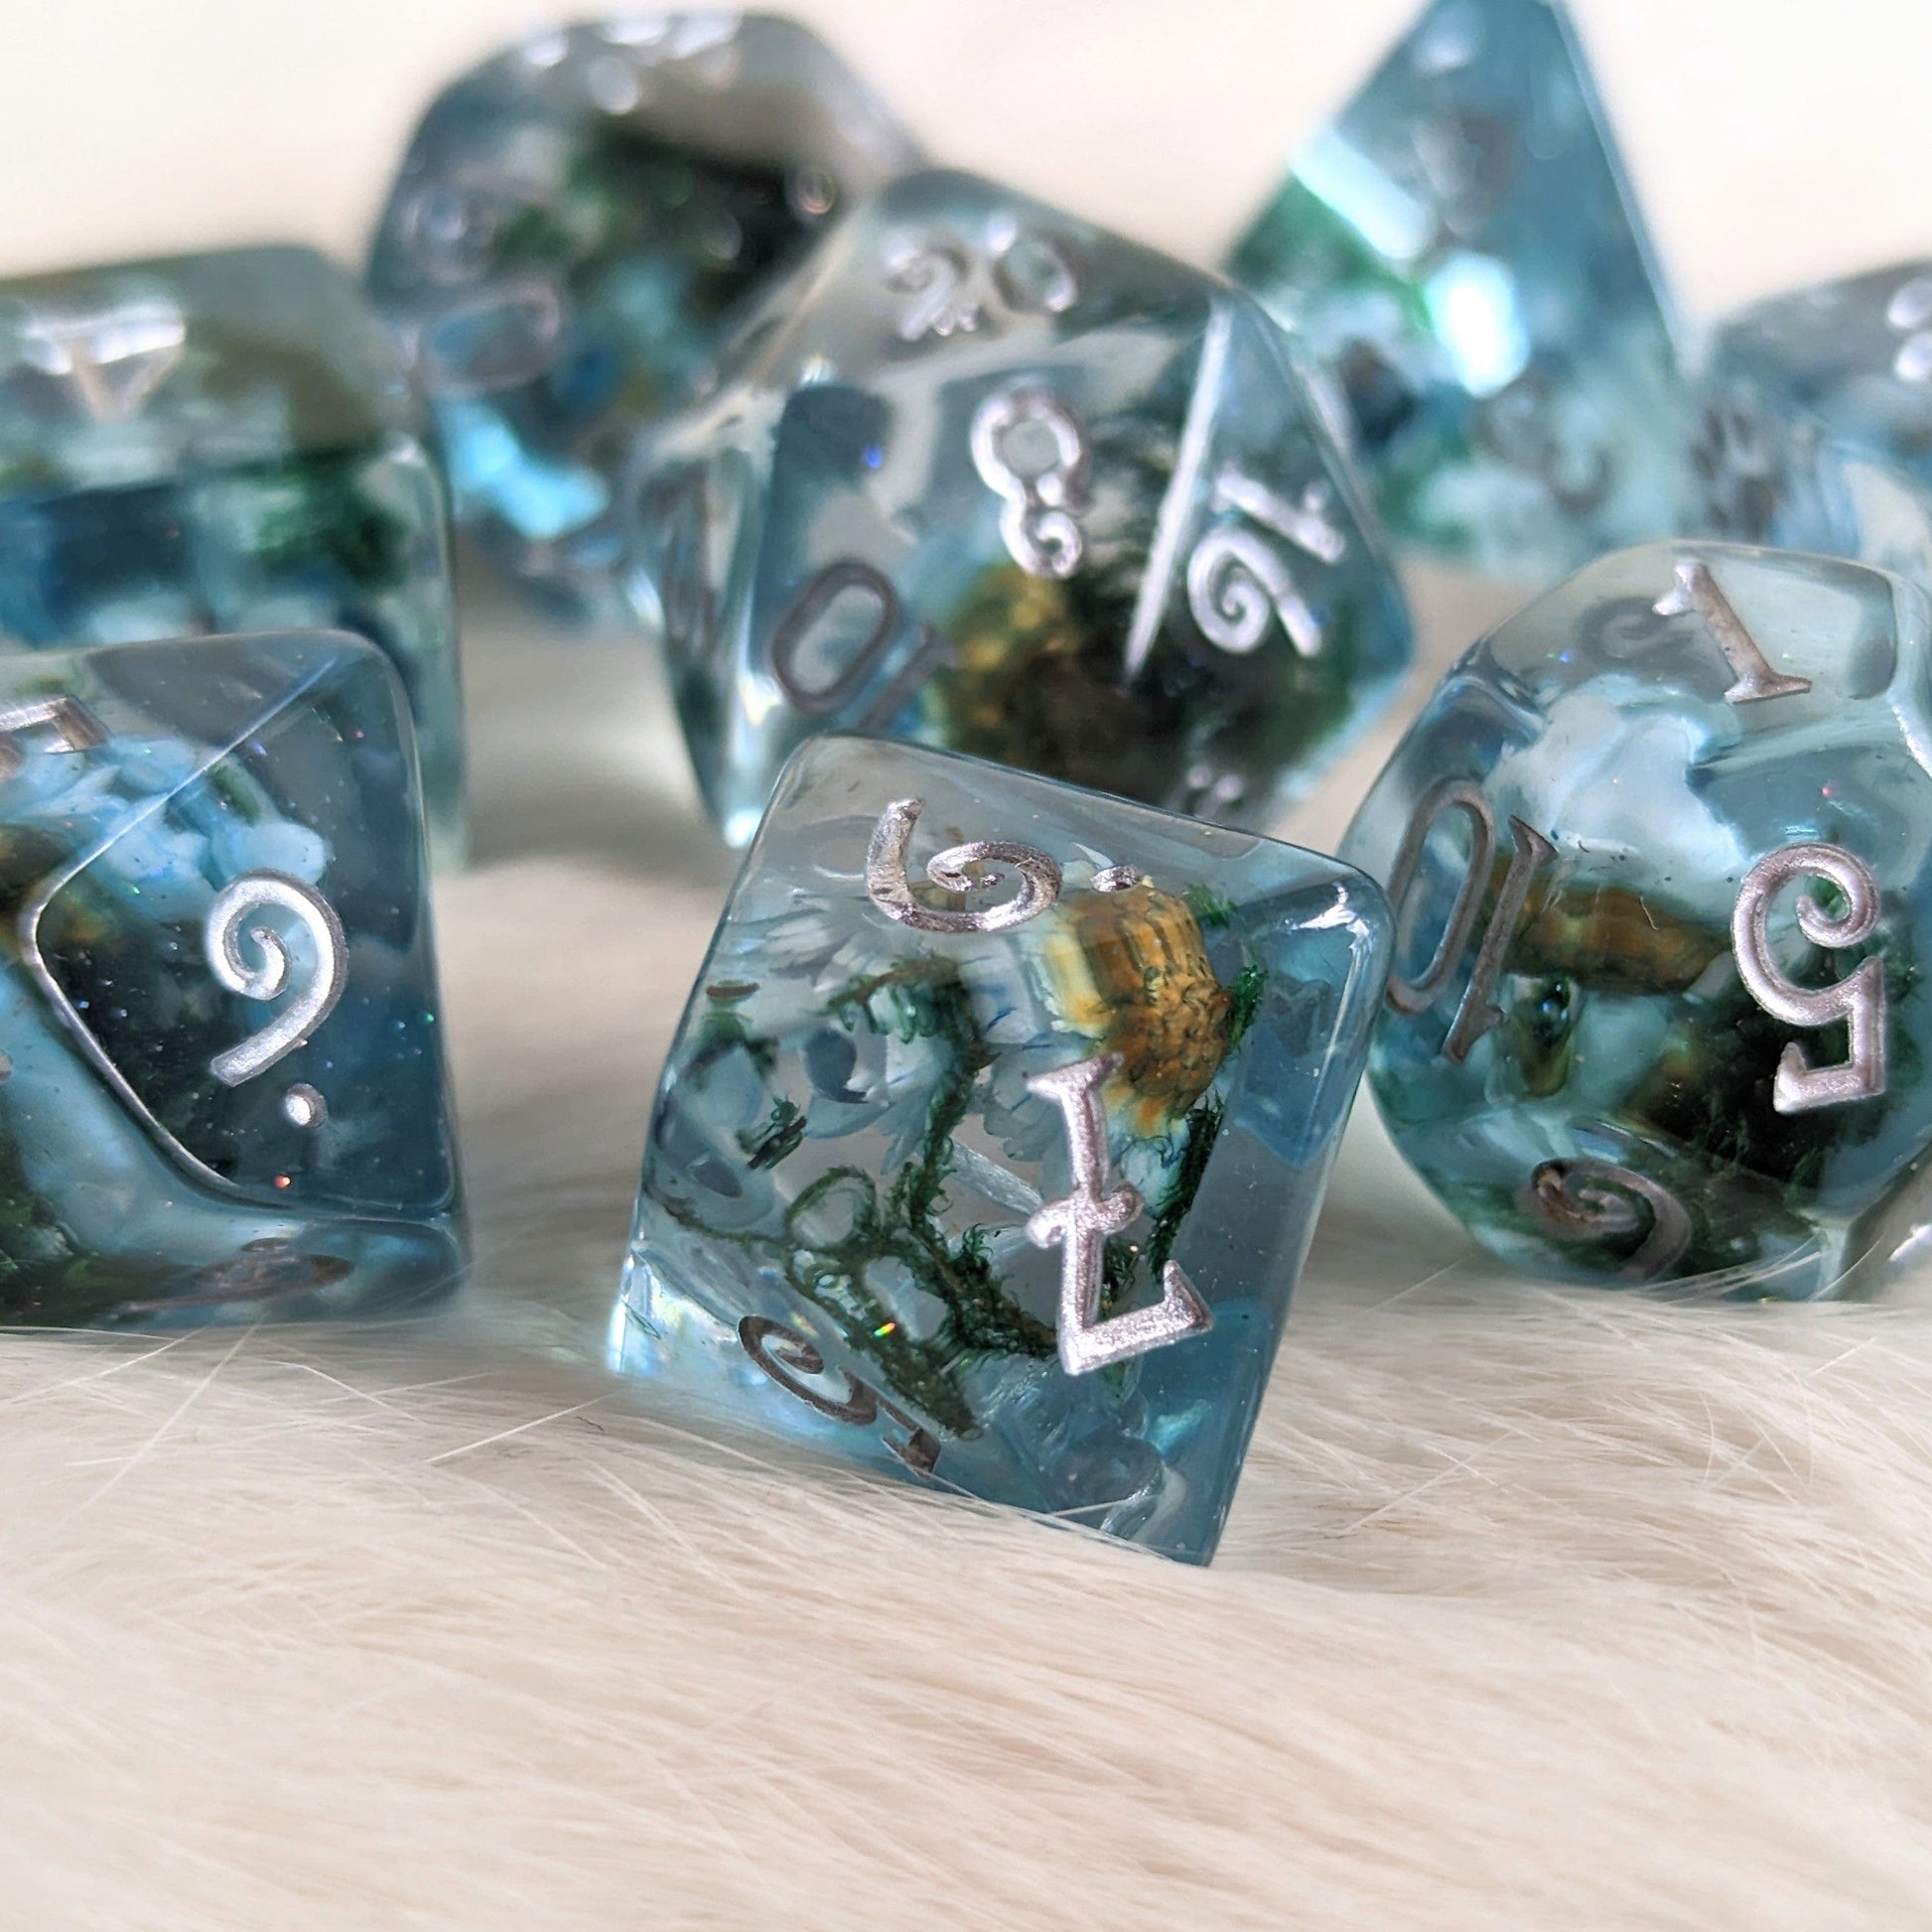 Blue Flower and Moss 8 piece DND dice set